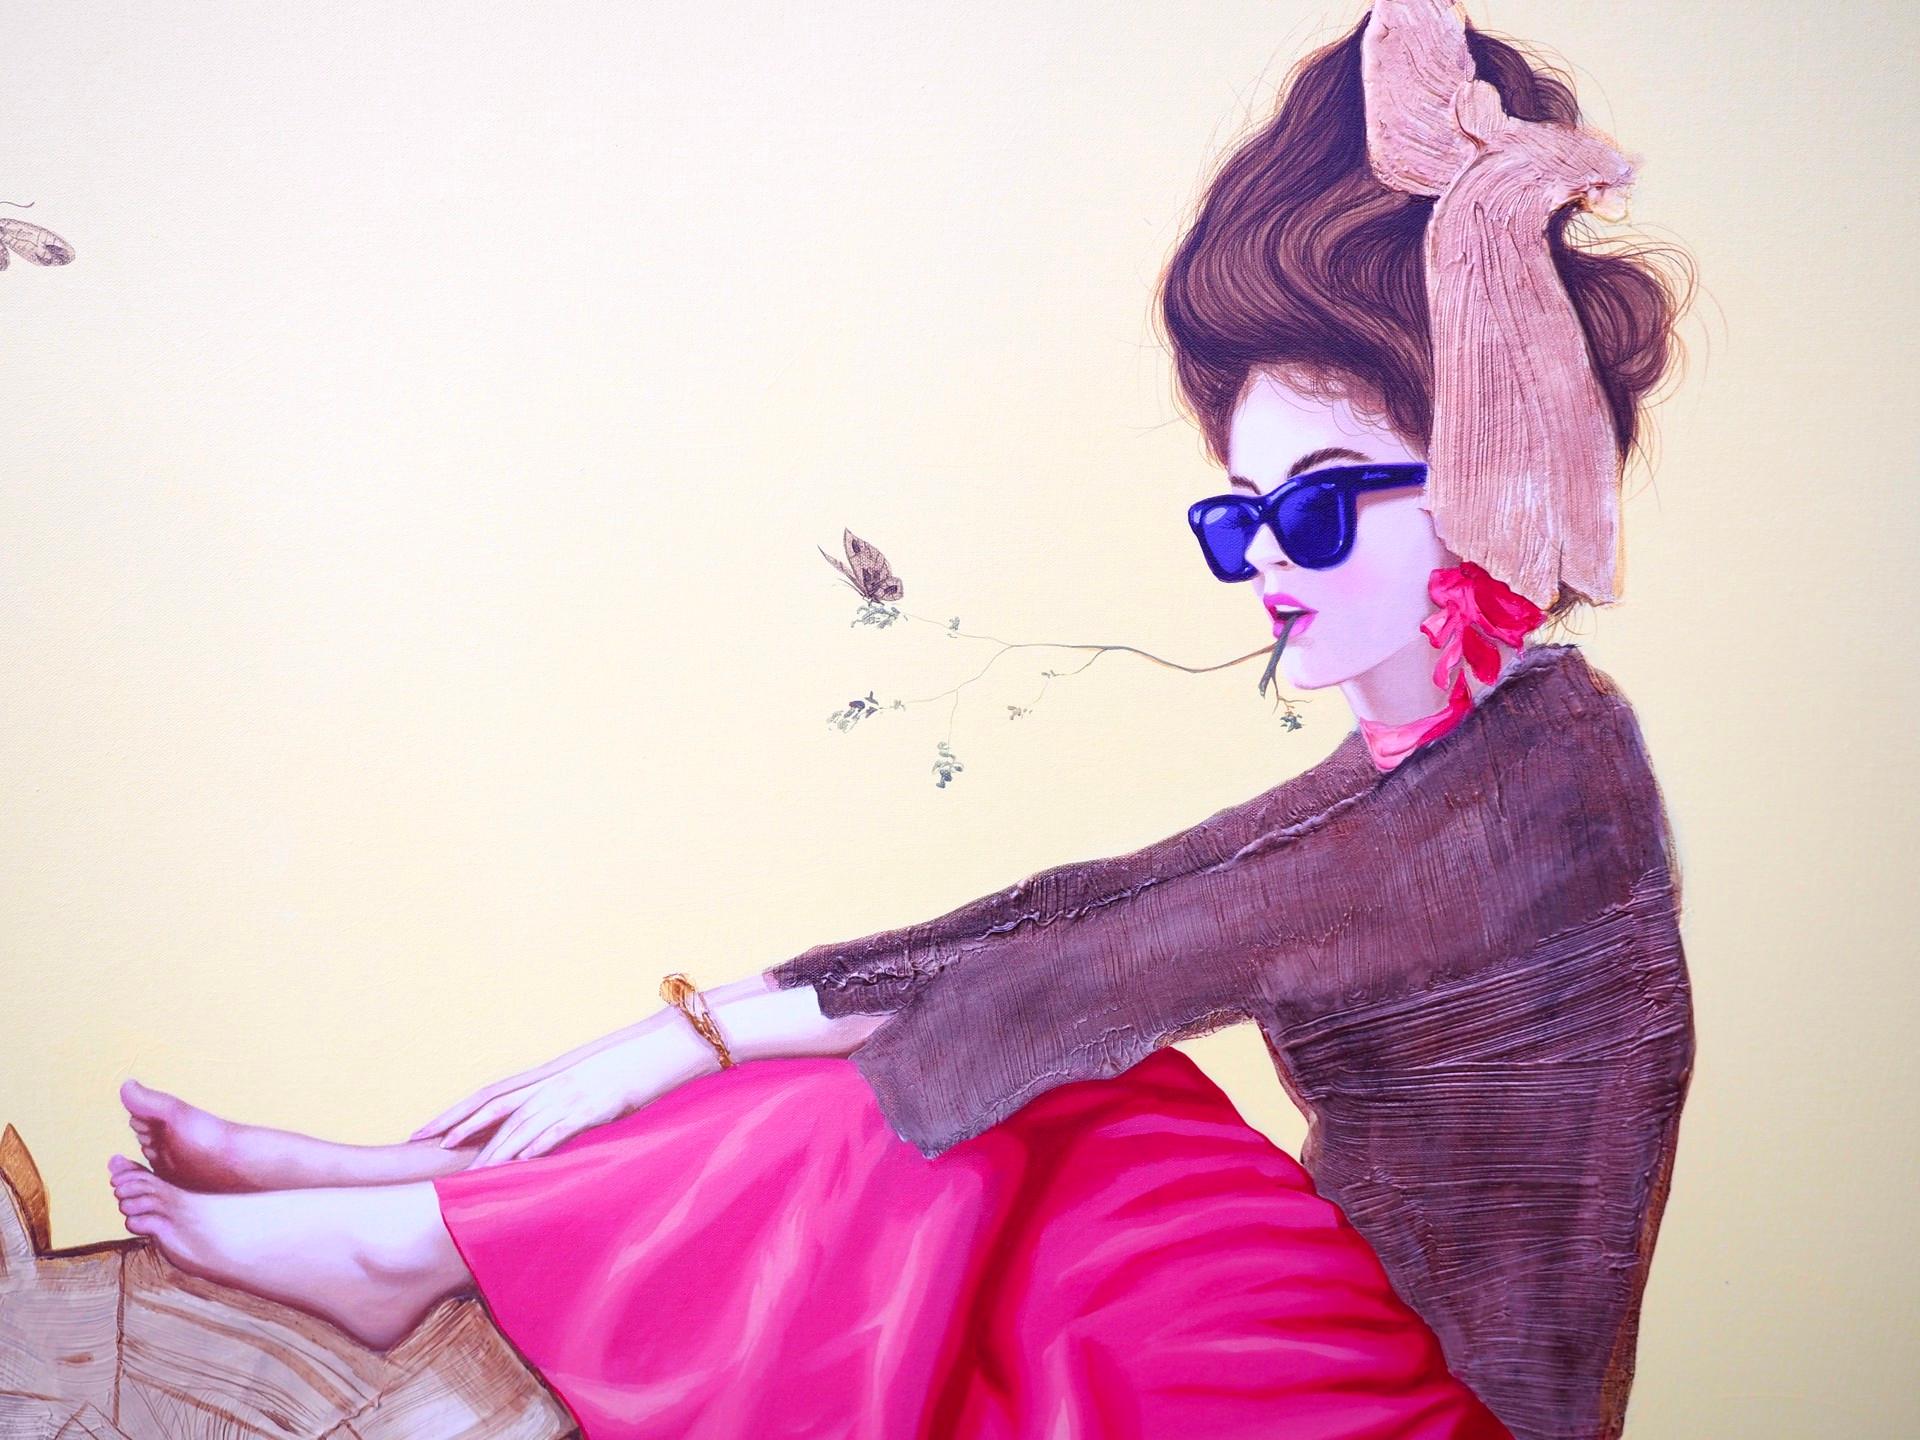 Le cavalier représente une femme portant une longue jupe rose et des lunettes de soleil bleu foncé. Le modèle est assis sur un âne en bois, ses pieds nus posés sur la tête de l'animal. Un papillon se pose sur un morceau d'herbe qui part des lèvres